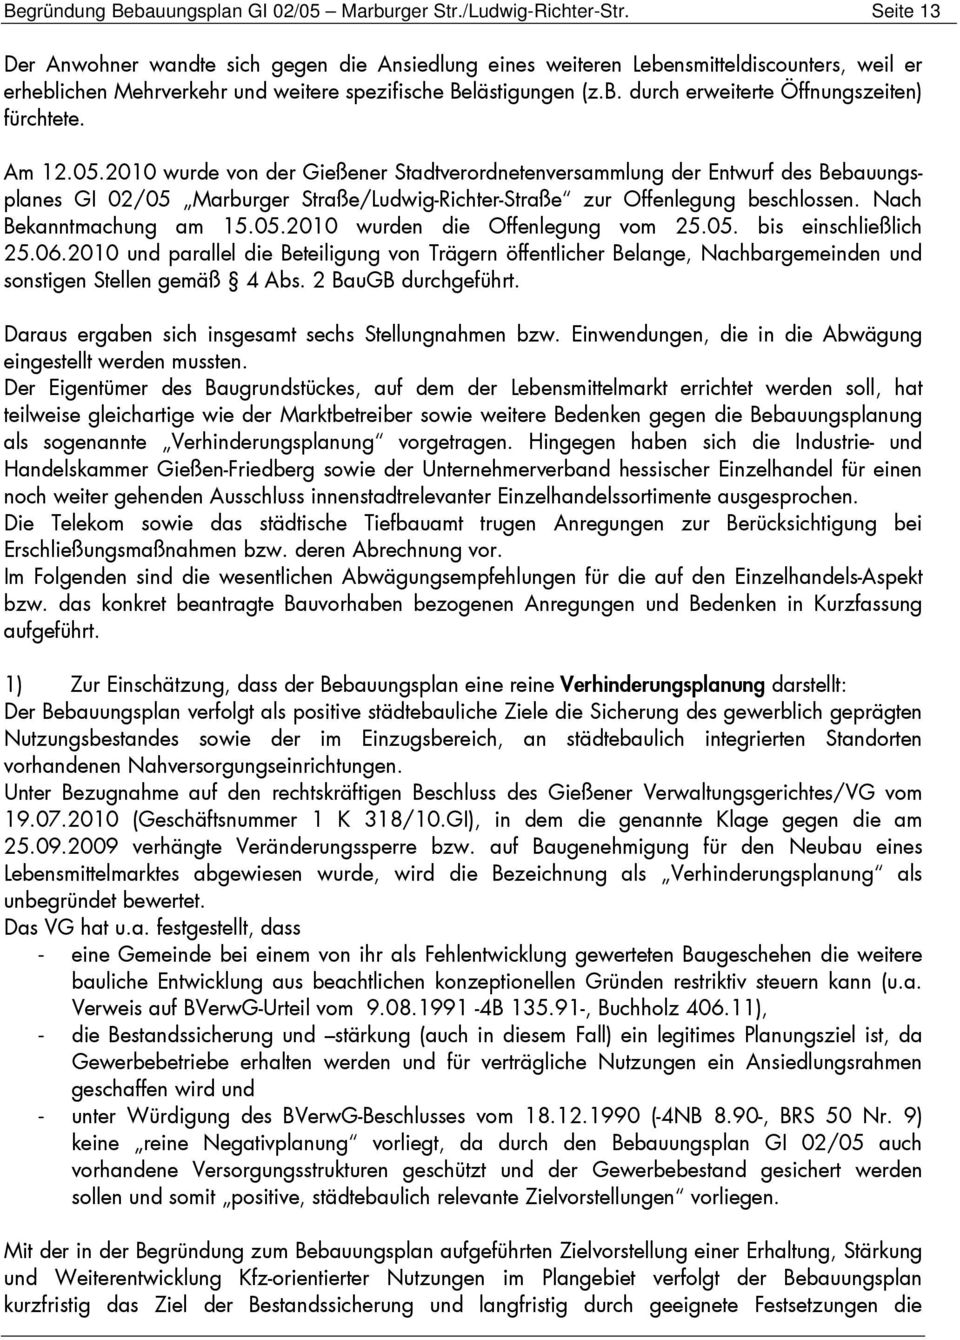 Am 12.05.2010 wurde von der Gießener Stadtverordnetenversammlung der Entwurf des Bebauungsplanes GI 02/05 Marburger Straße/Ludwig-Richter-Straße zur Offenlegung beschlossen. Nach Bekanntmachung am 15.